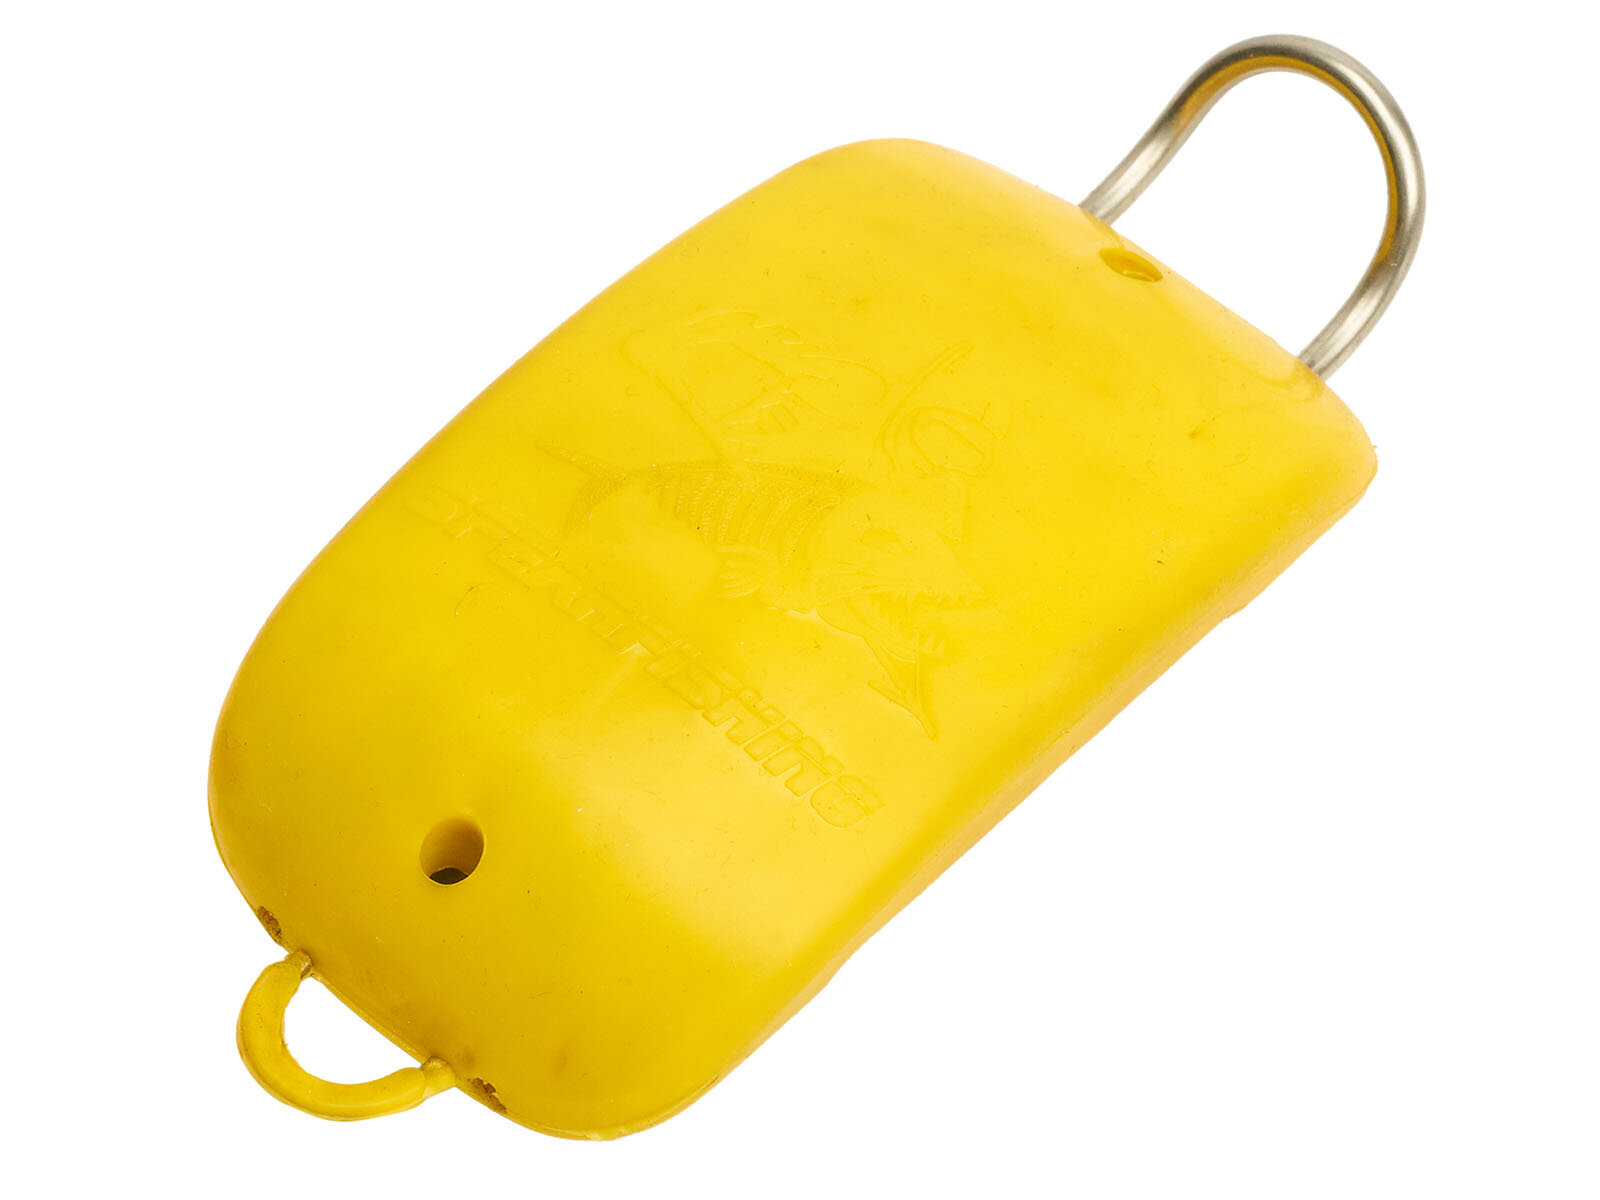 Груз поясной дайвгруз ЯнеR 1.1 кг, быстросъемный довесок с фиксатором, пластикатное покрытие, желтый